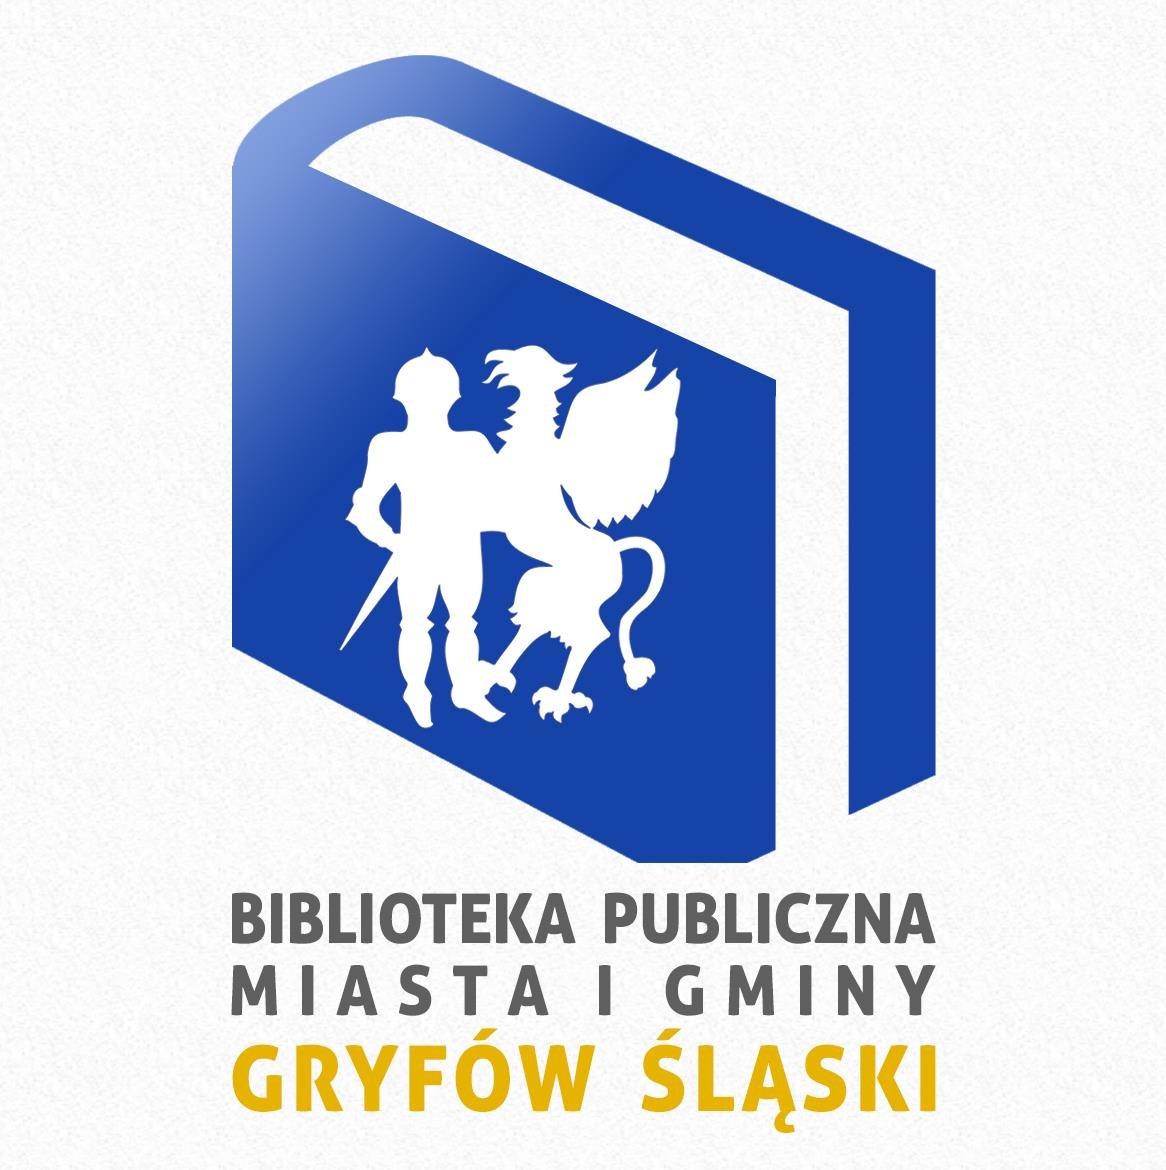 Logo Biblioteka Publiczna Miasta i Gminy Gryfw lski